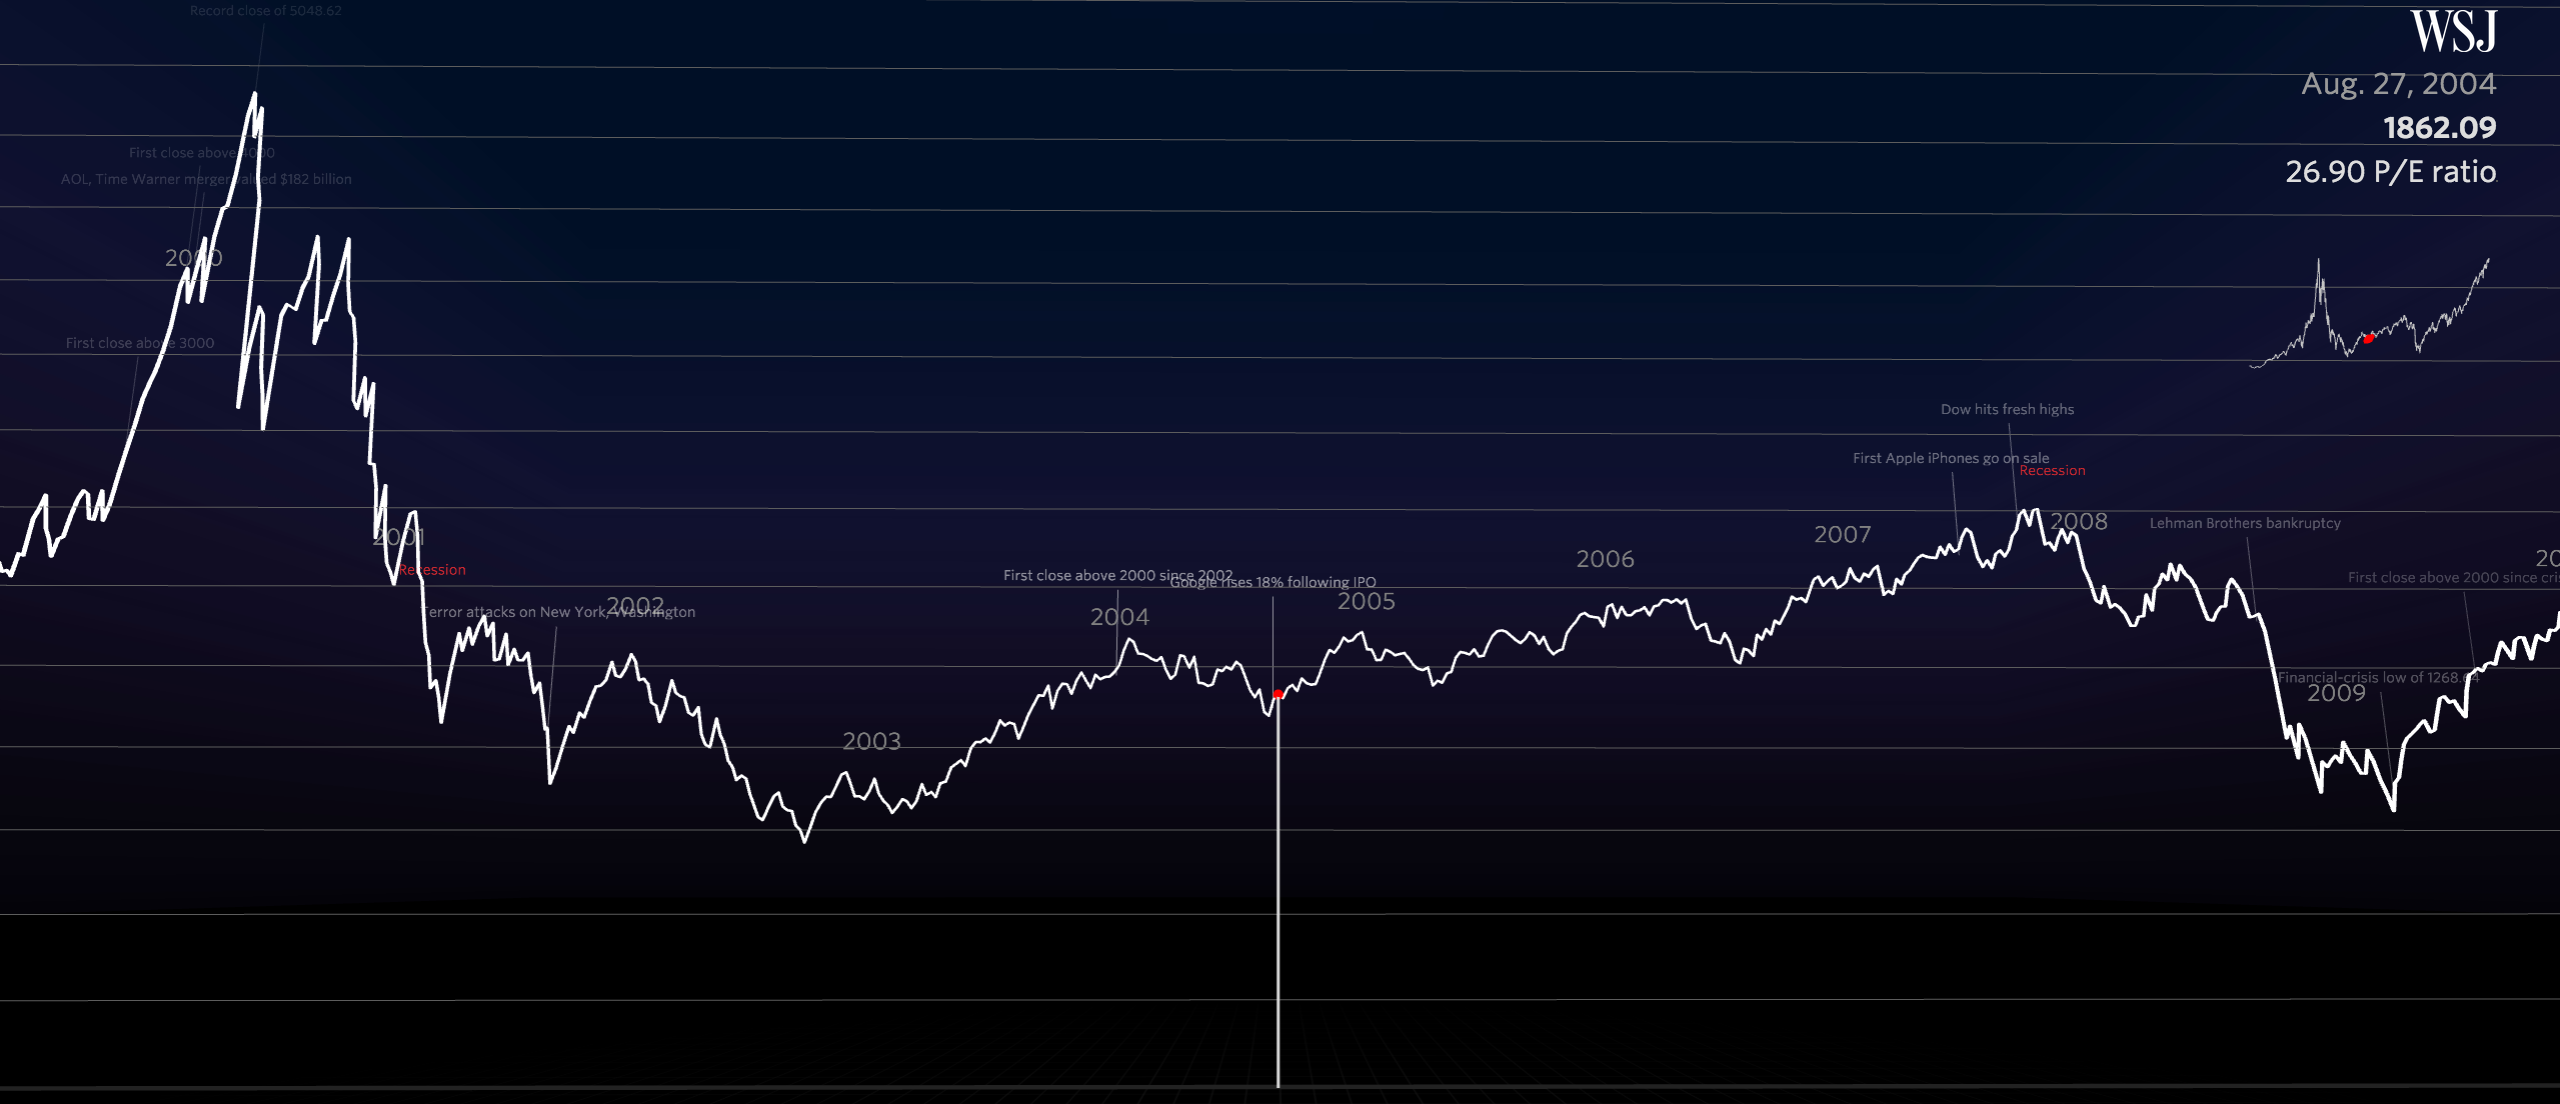 D3 Js Stock Chart